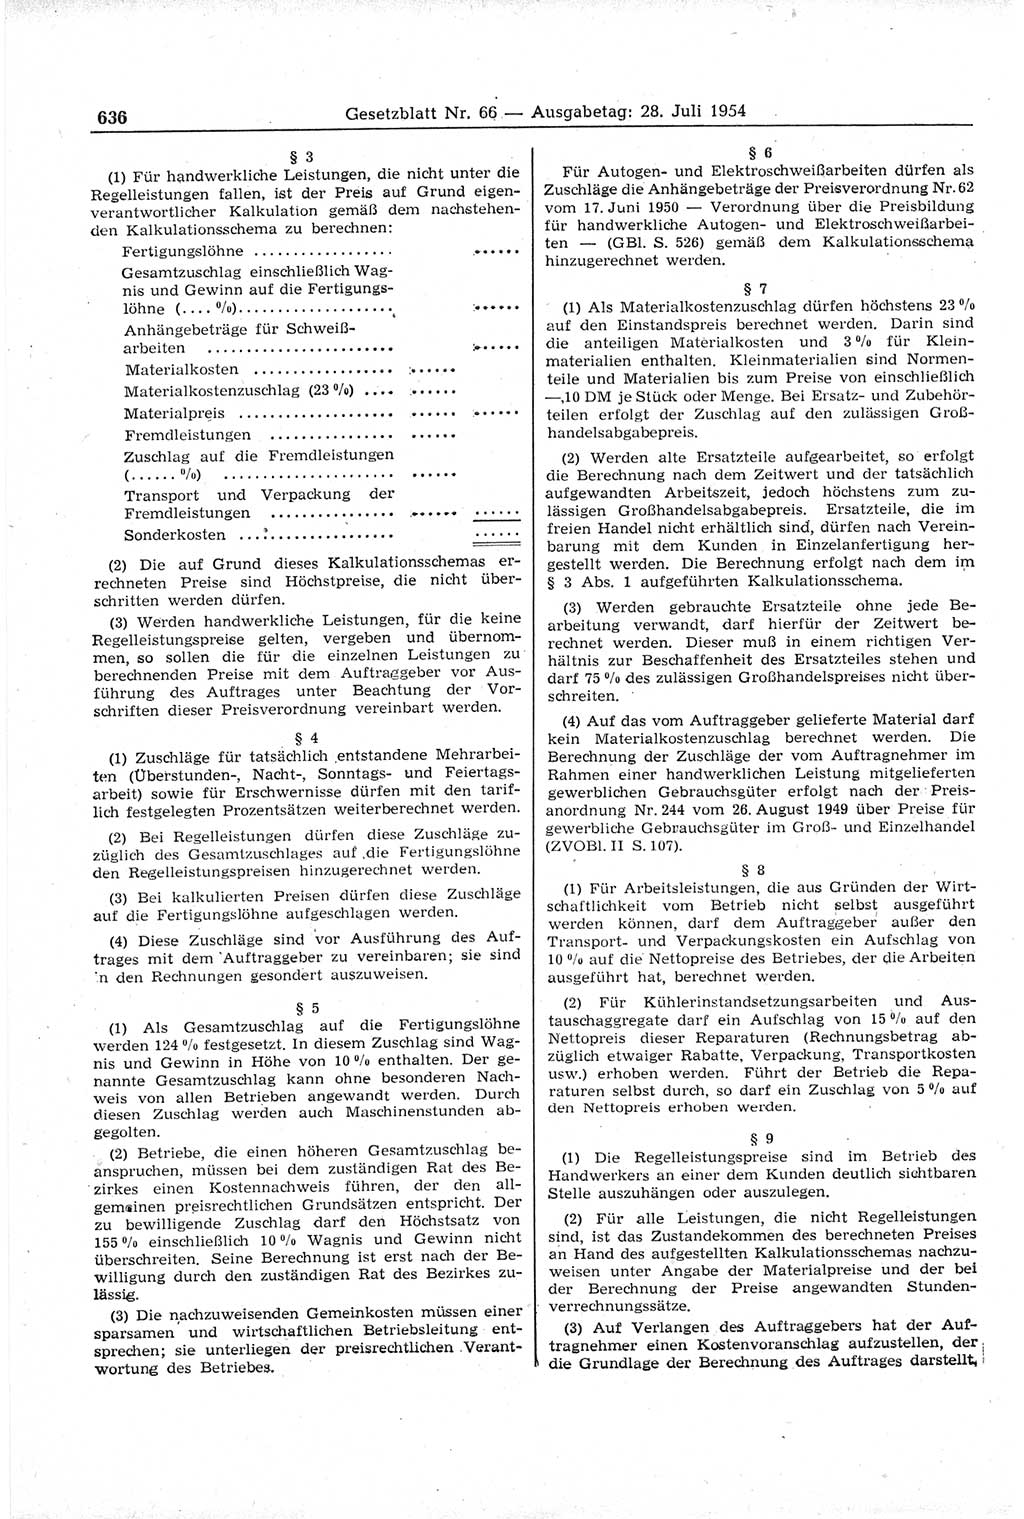 Gesetzblatt (GBl.) der Deutschen Demokratischen Republik (DDR) 1954, Seite 636 (GBl. DDR 1954, S. 636)